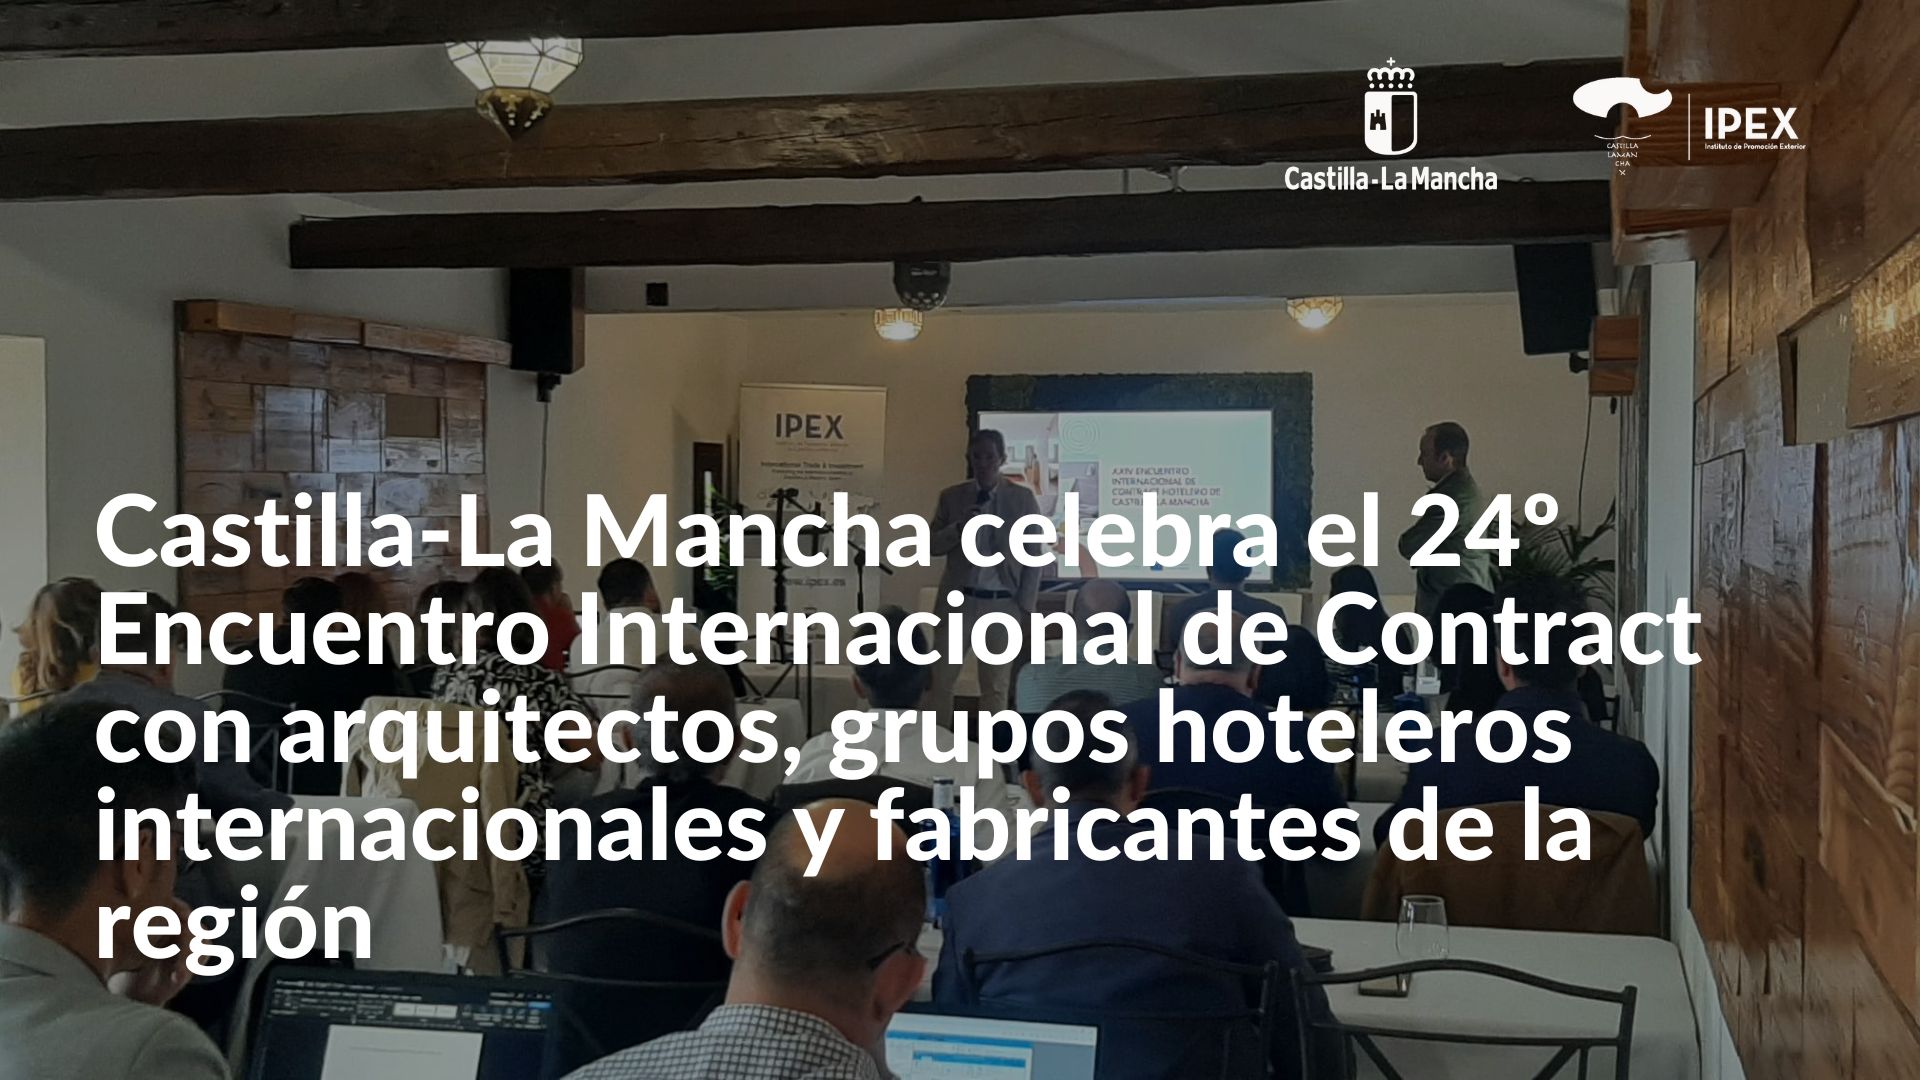 Castilla-La Mancha celebra el 24º Encuentro Internacional de Contract con arquitectos, grupos hoteleros internacionales y fabricantes de la región